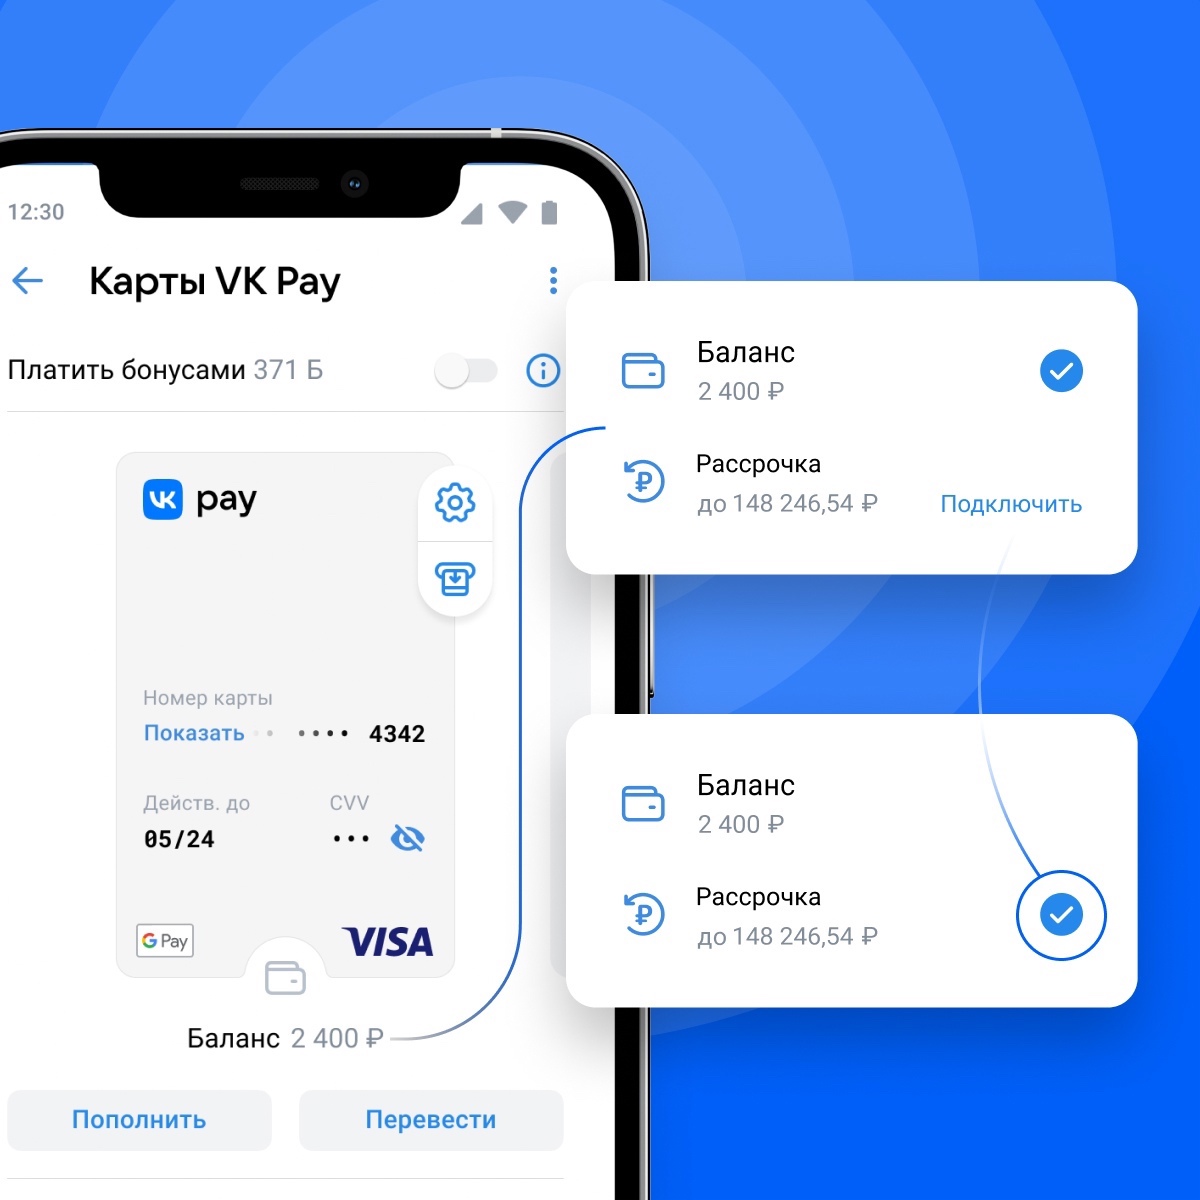 Пользователи VK Pay теперь могут покупать в рассрочку офлайн